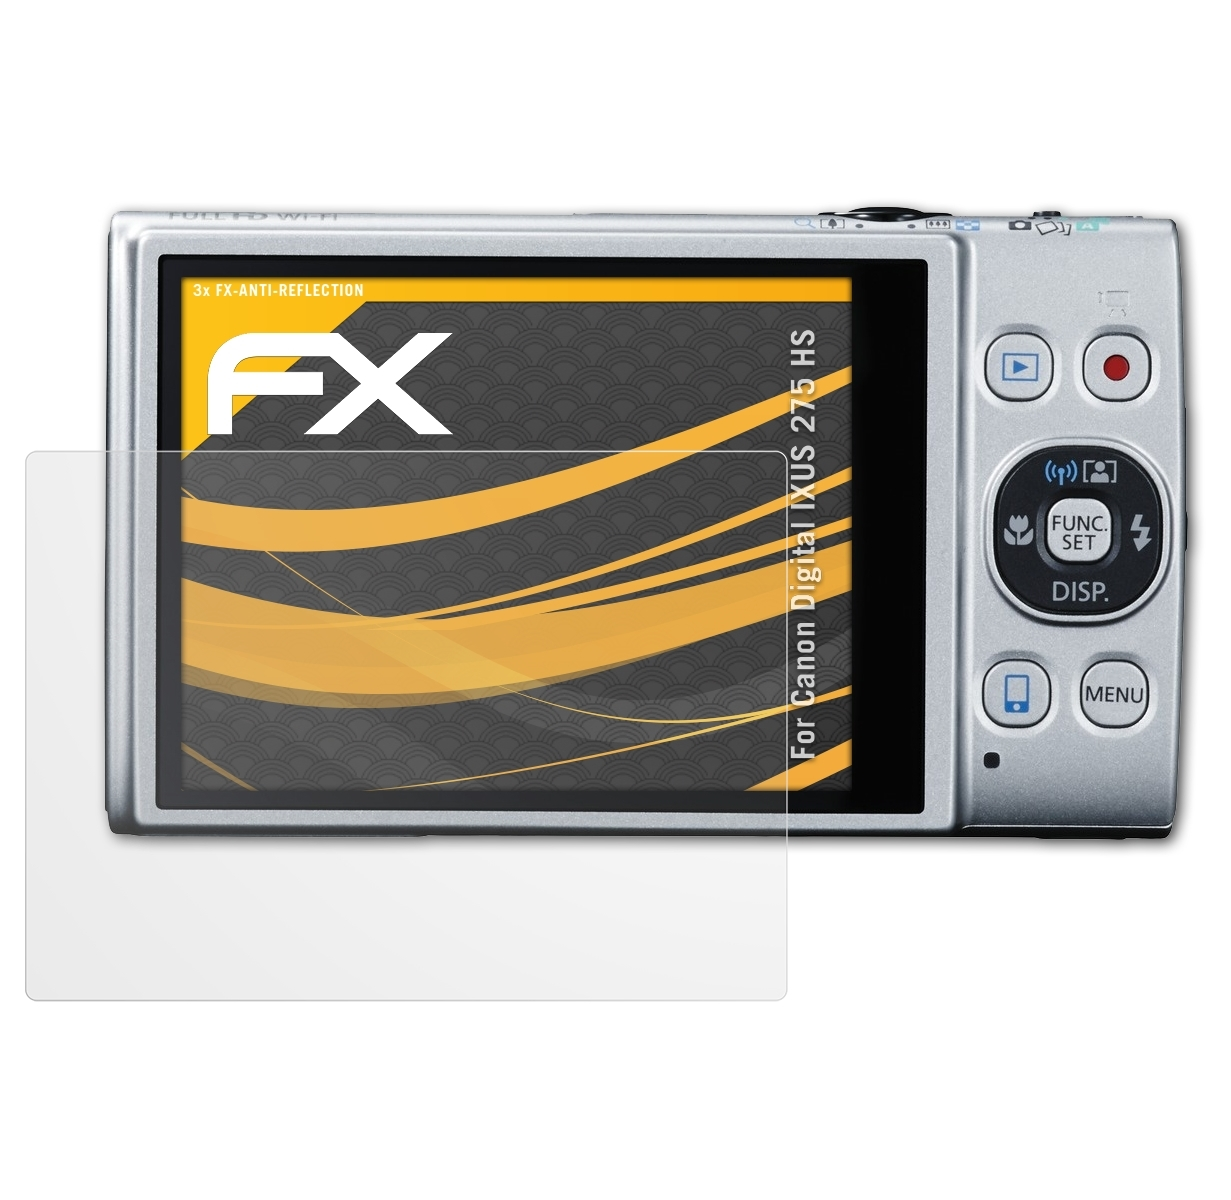 ATFOLIX 3x FX-Antireflex Displayschutz(für Canon 275 Digital HS) IXUS